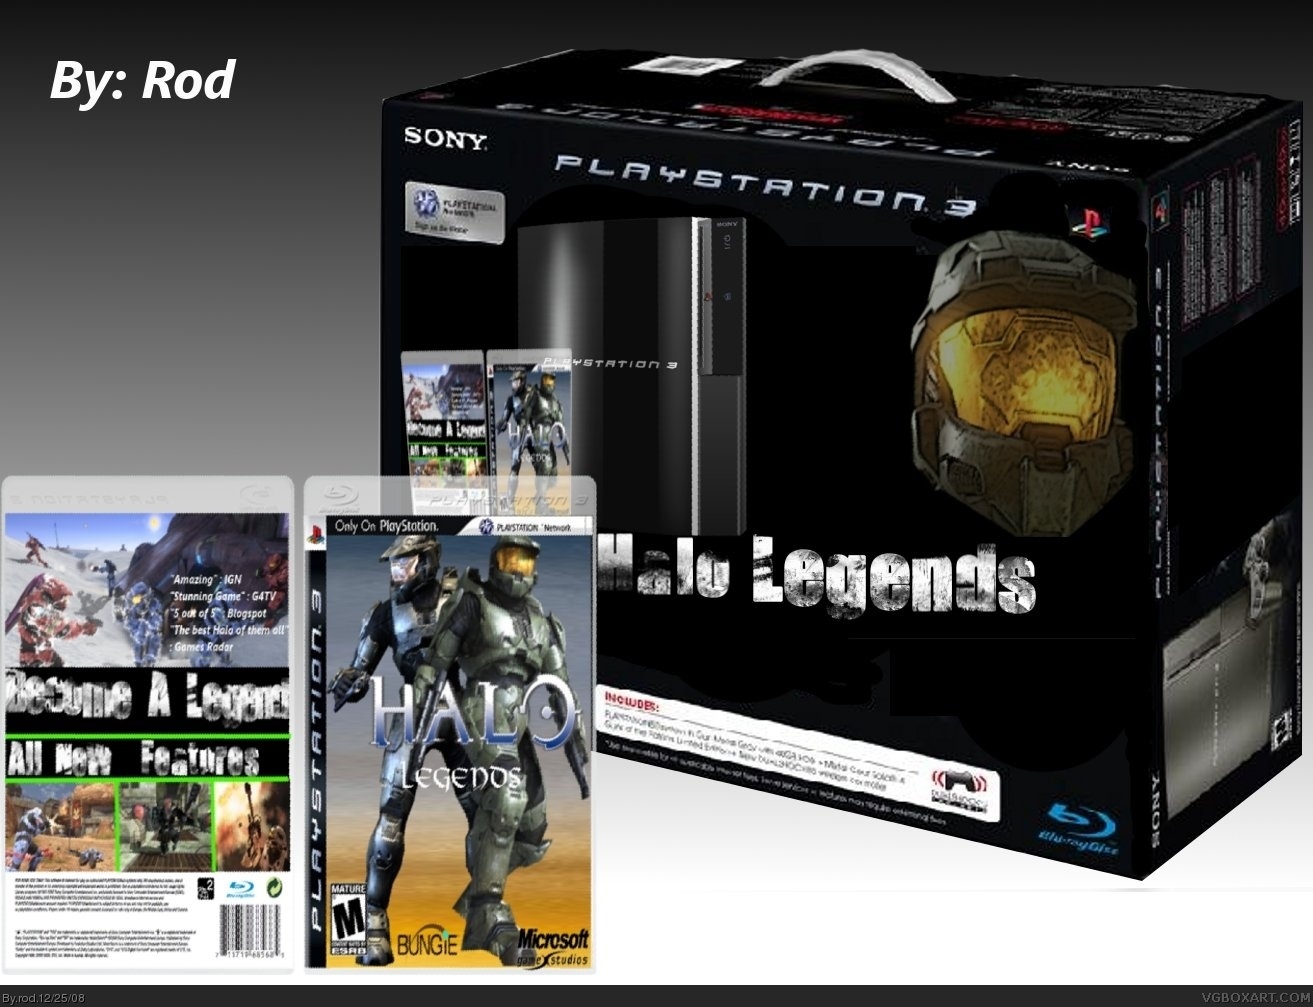 Halo: Legends (PS3 Bundle Box) box cover